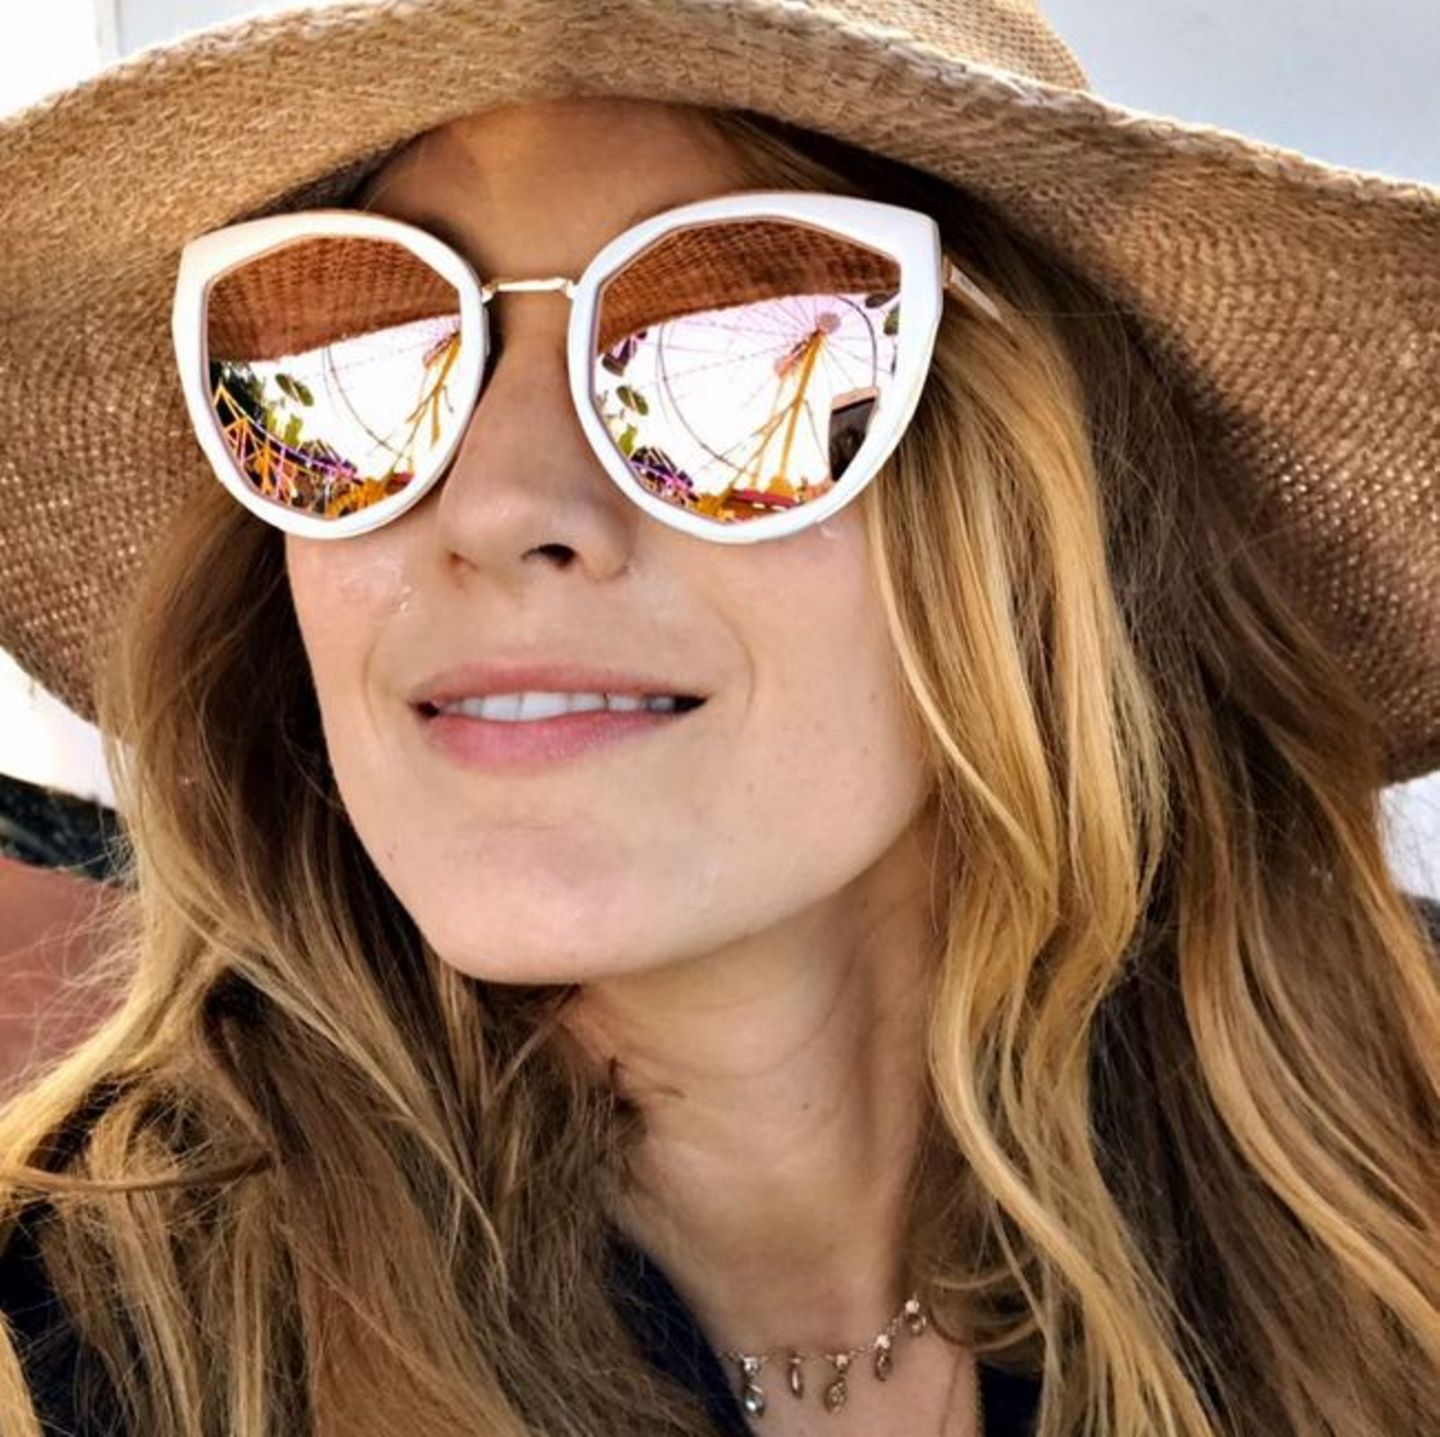 Sommer, Spaß und Sonnenbrille: Blake Lively begrüßt die Sonnenstrahlen mit diesem extravaganten Modell mit verspiegelten Gläsern von Privé Revaux. Und das gute Stück kostet sogar nur 30 Dollar!